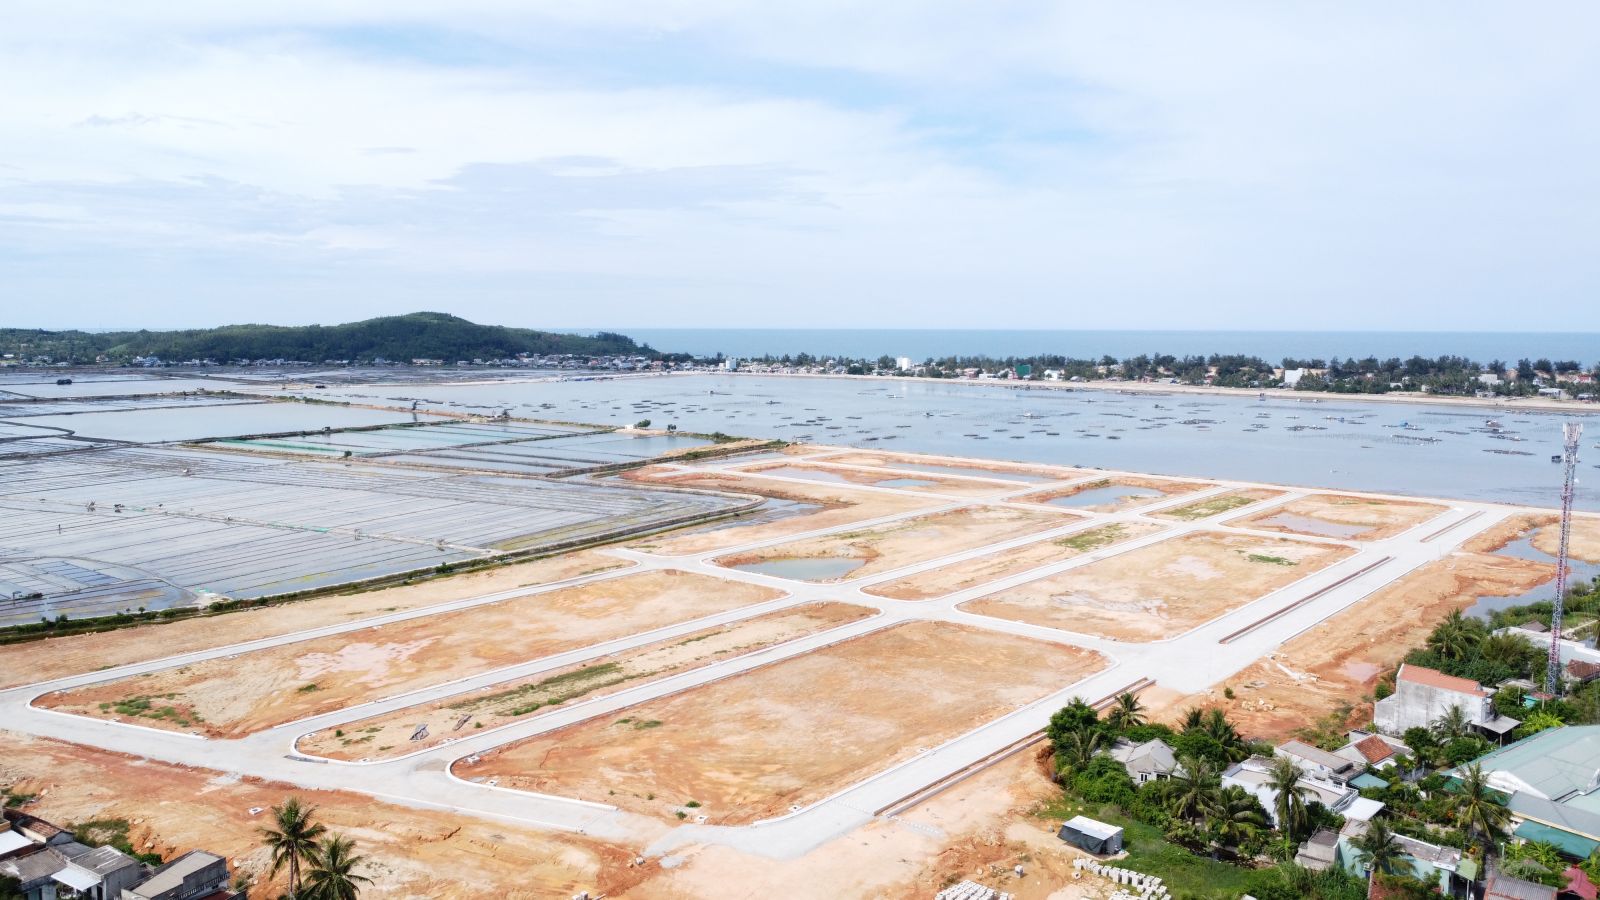 Dự án Khu đô thị Bắc Sa Huỳnh đang triển khai tại huyện Đức Phổ, tỉnh Quảng Ngãi.